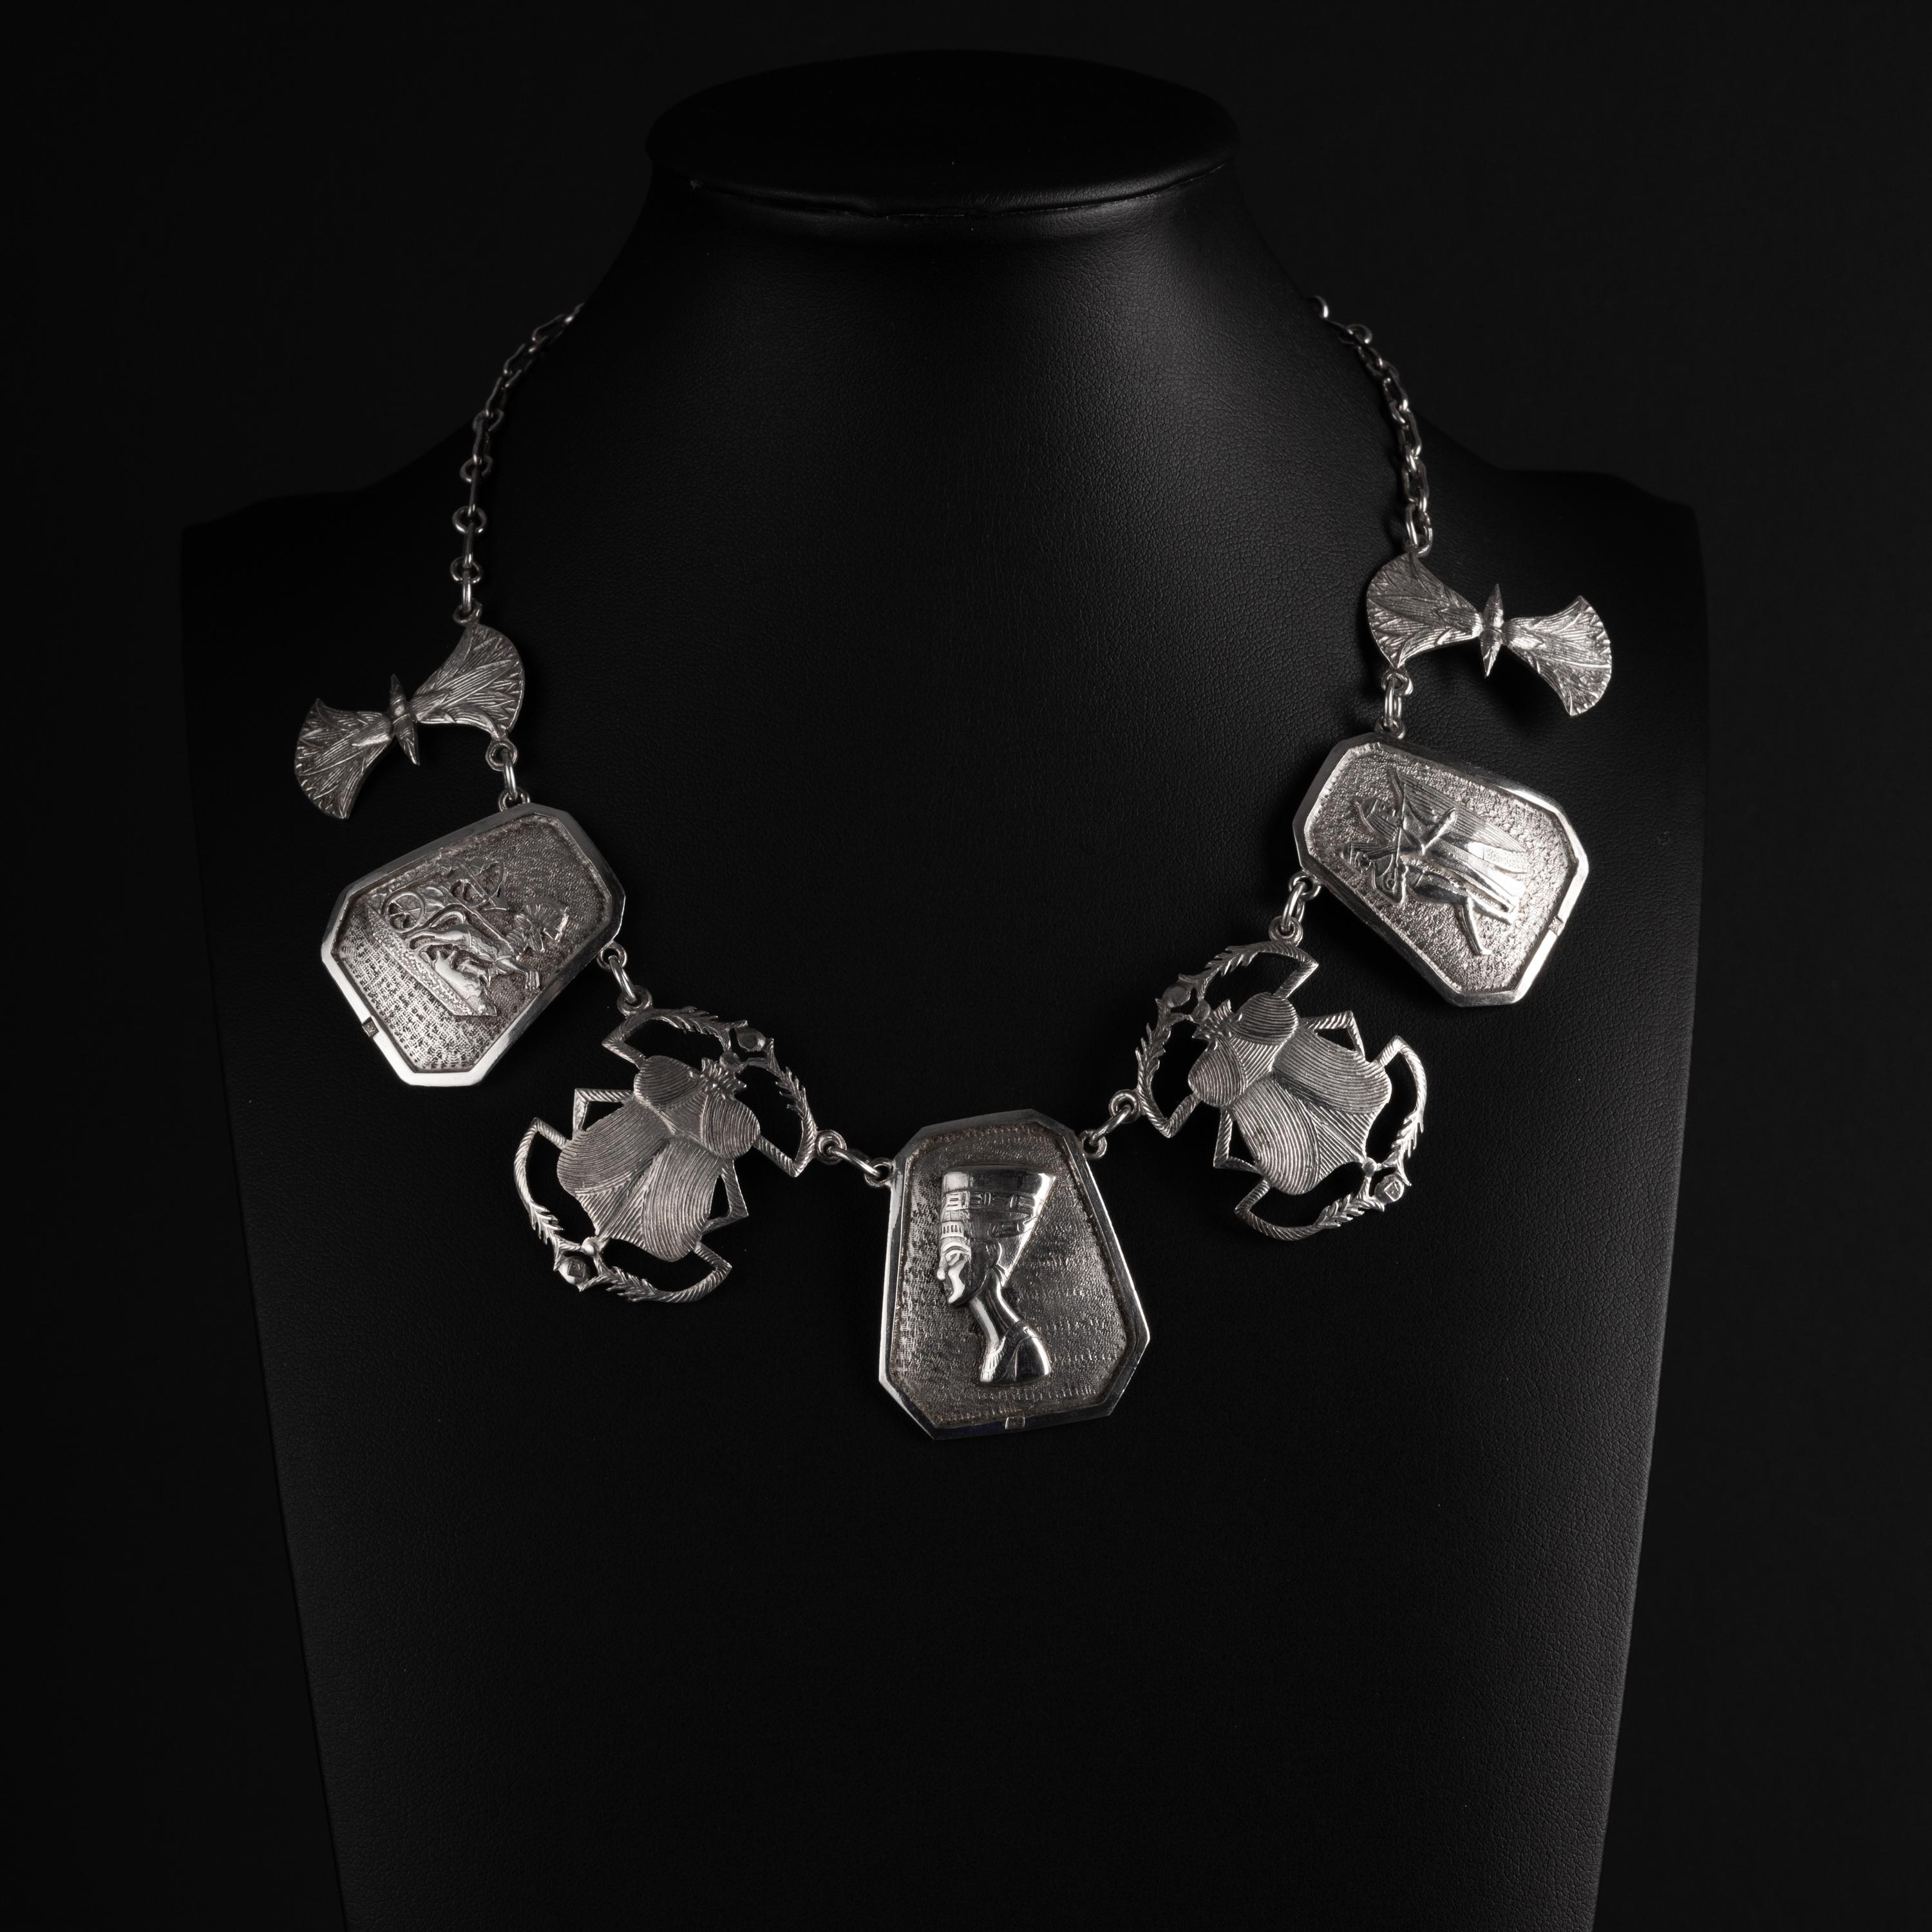 Ce collier unique et spectaculaire a été créé en argent sterling au début du vingtième siècle, vers 1920, à l'apogée de la période du renouveau égyptien. Le collier comprend 7 plaques en argent, chacune d'entre elles étant très détaillée et